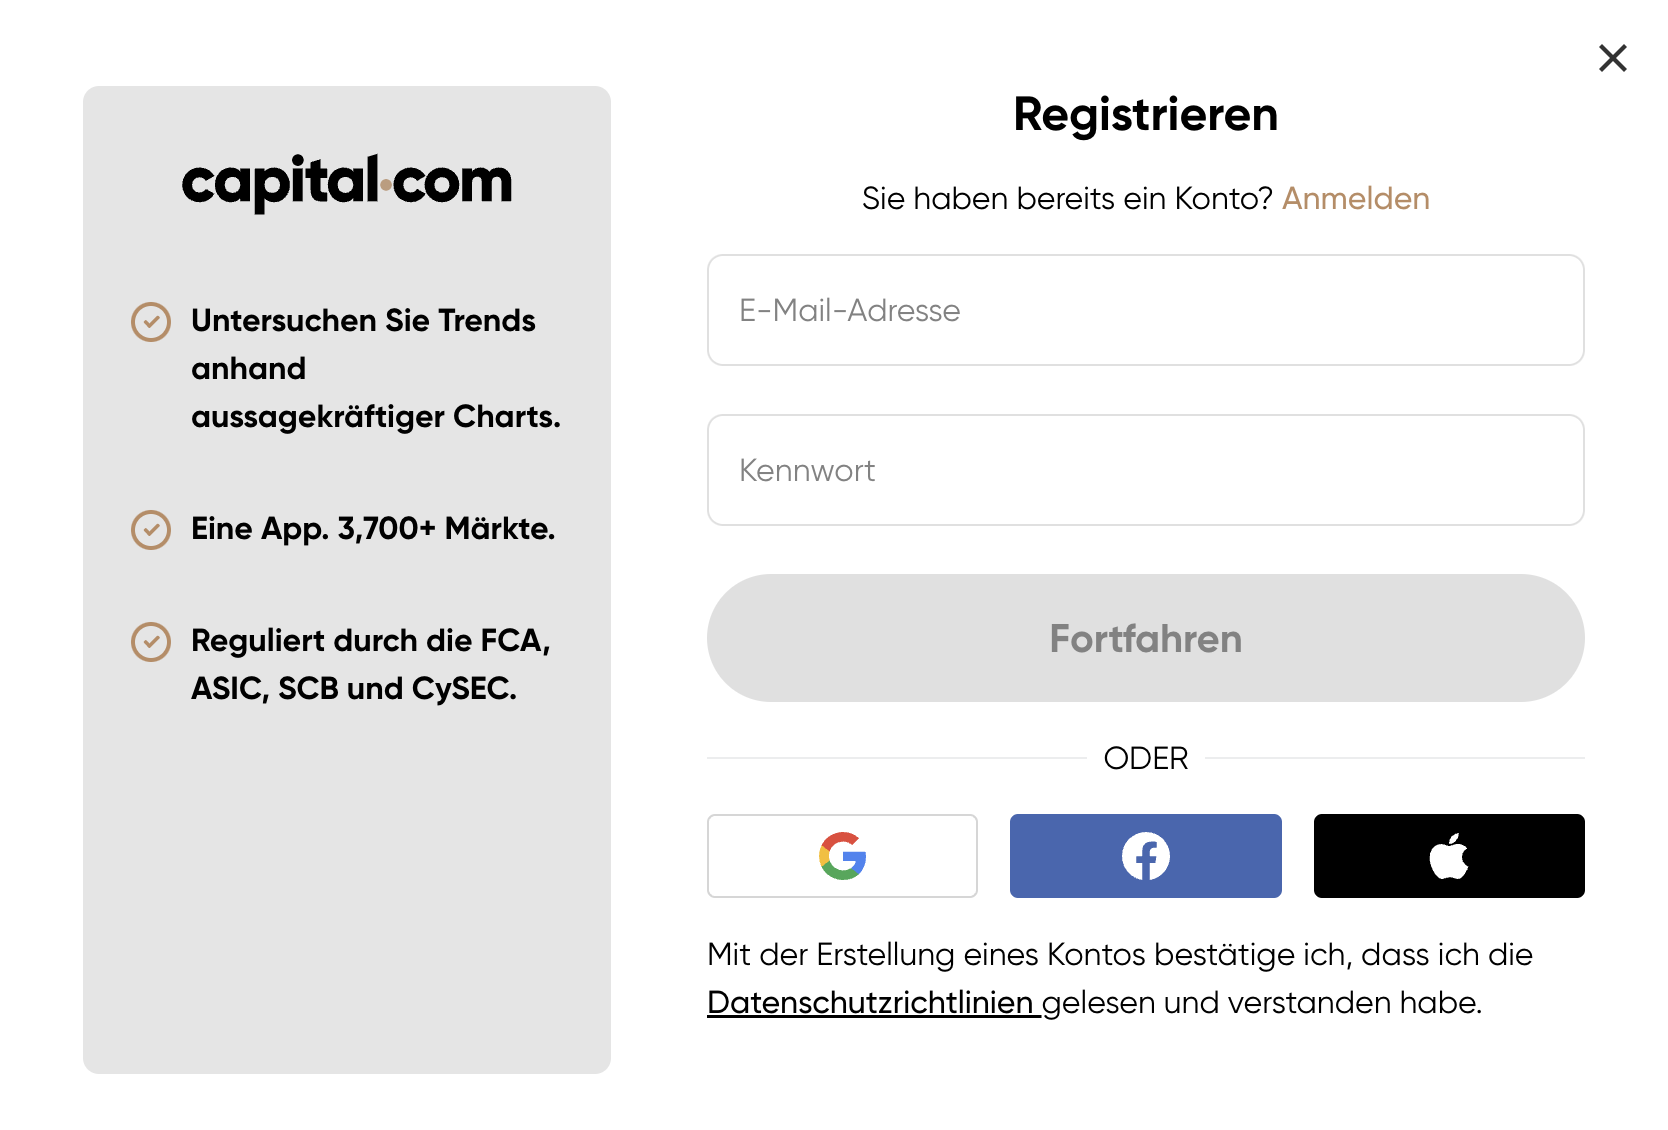 Capital.com Registrieren